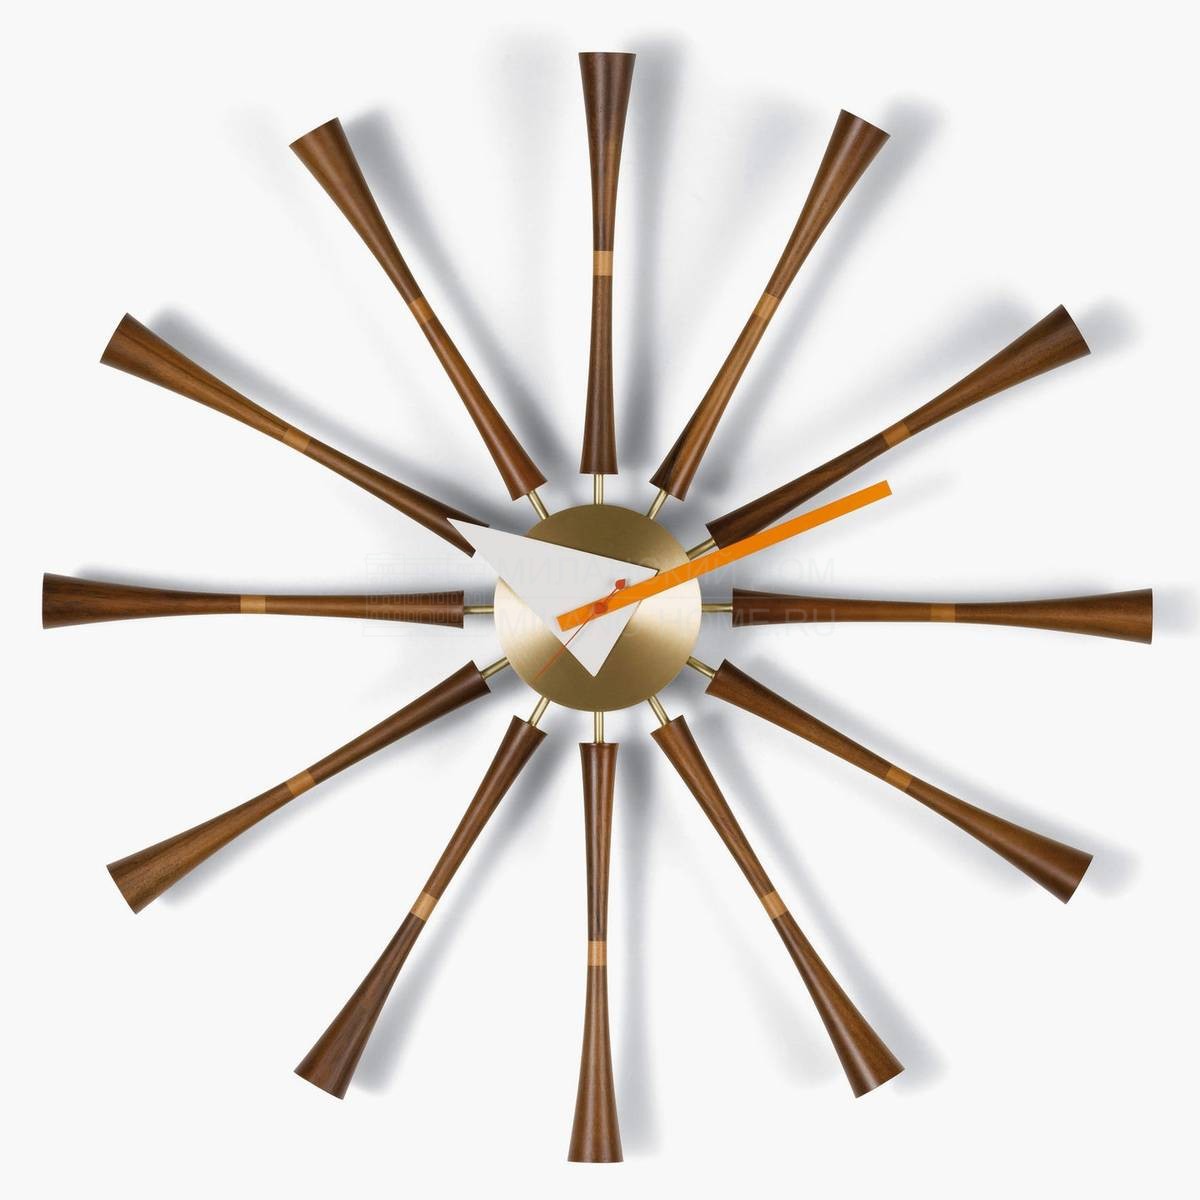 Настенные часы Spindle Clock из Швейцарии фабрики VITRA